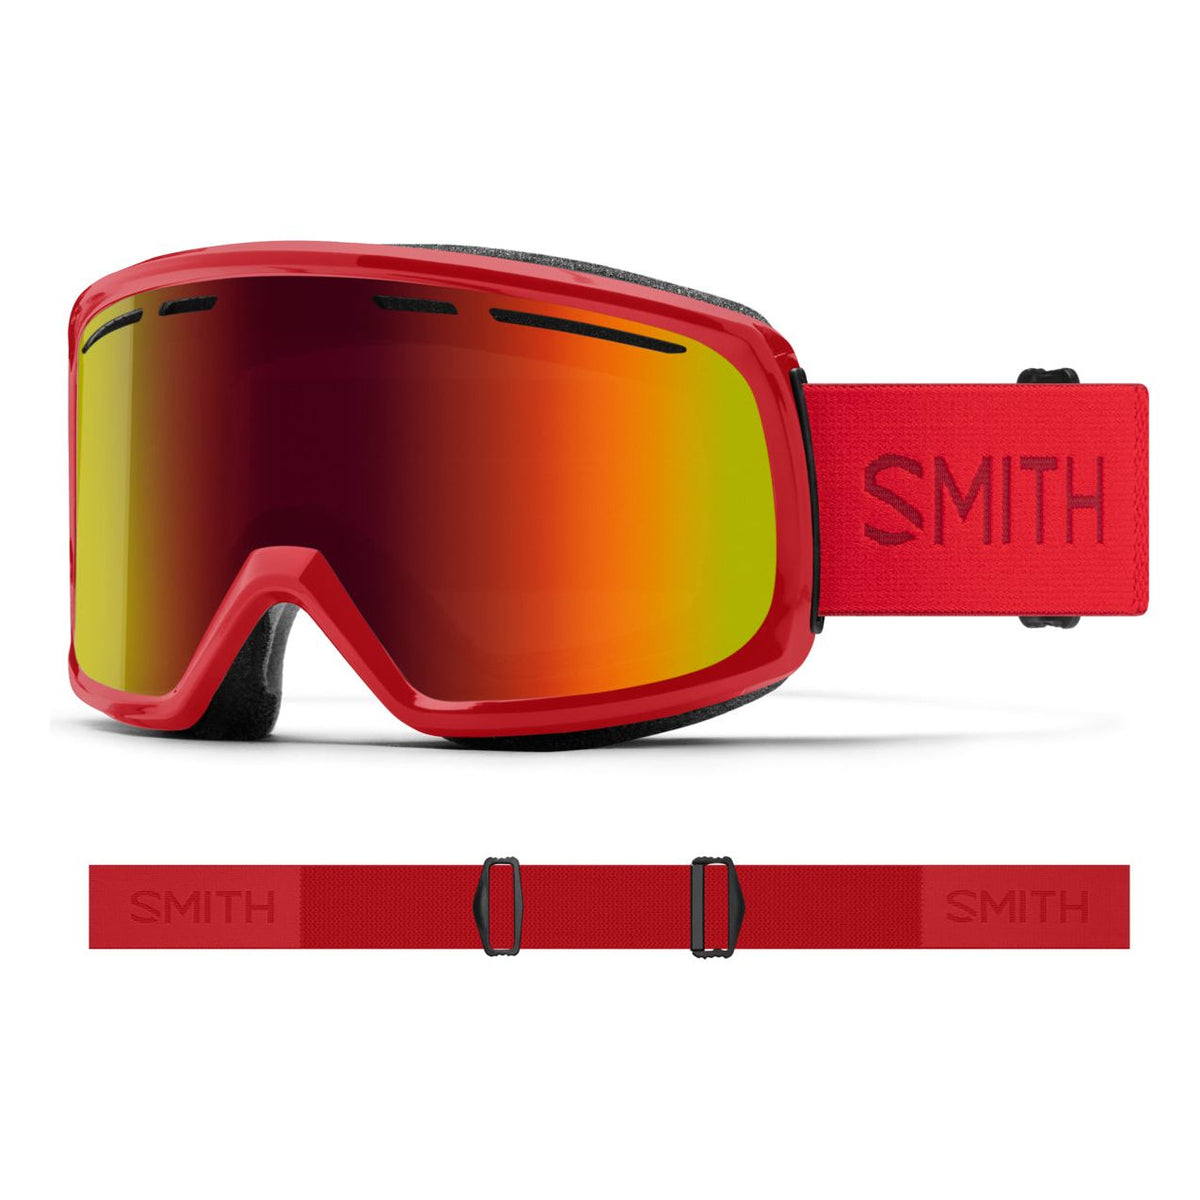 Smith Optics Range Goggles